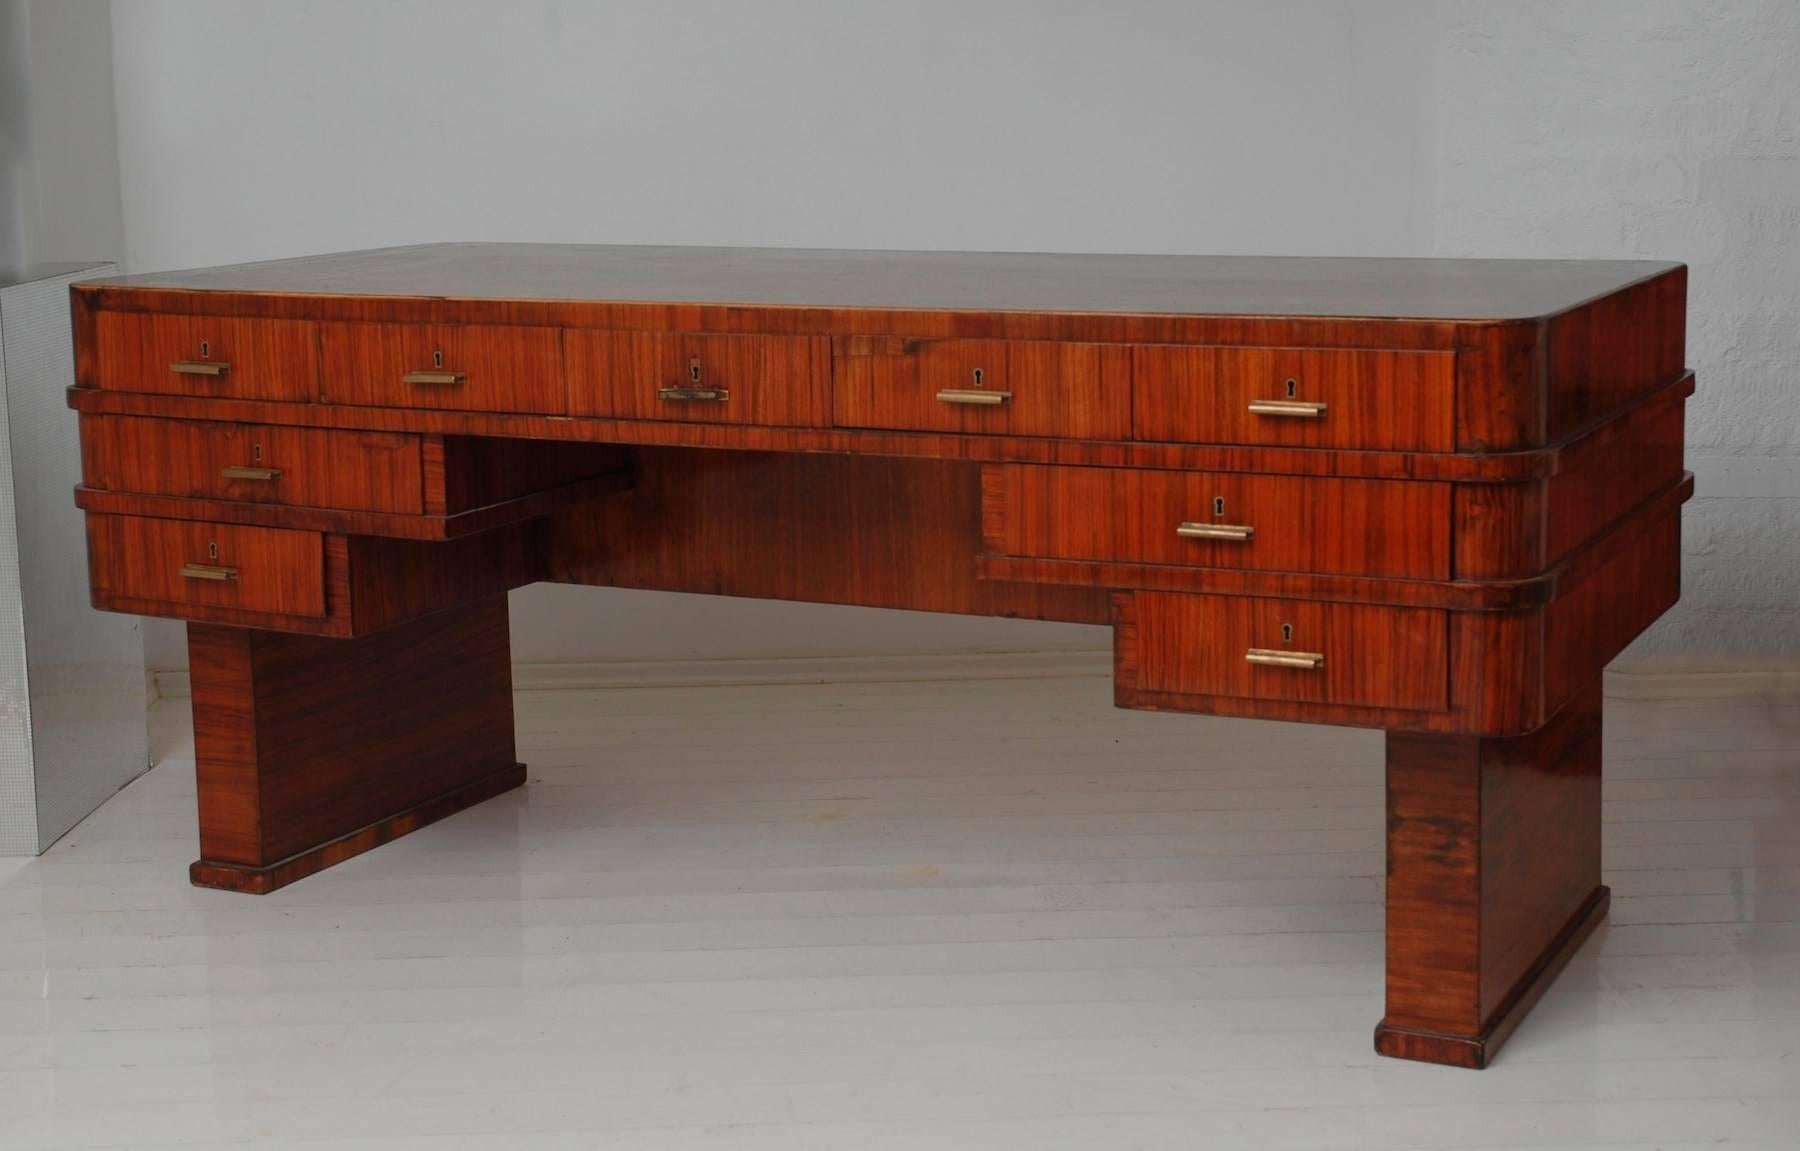 Dieser seltene große doppelseitige Schreibtisch wurde von Lajos (Ludwig) Kozma entworfen, der durch seine Zeichnungen, Gebäude und Möbel einen beispiellosen Einfluss auf das europäische Design hatte.

Dieser Schreibtisch ist mit Walnuss- und